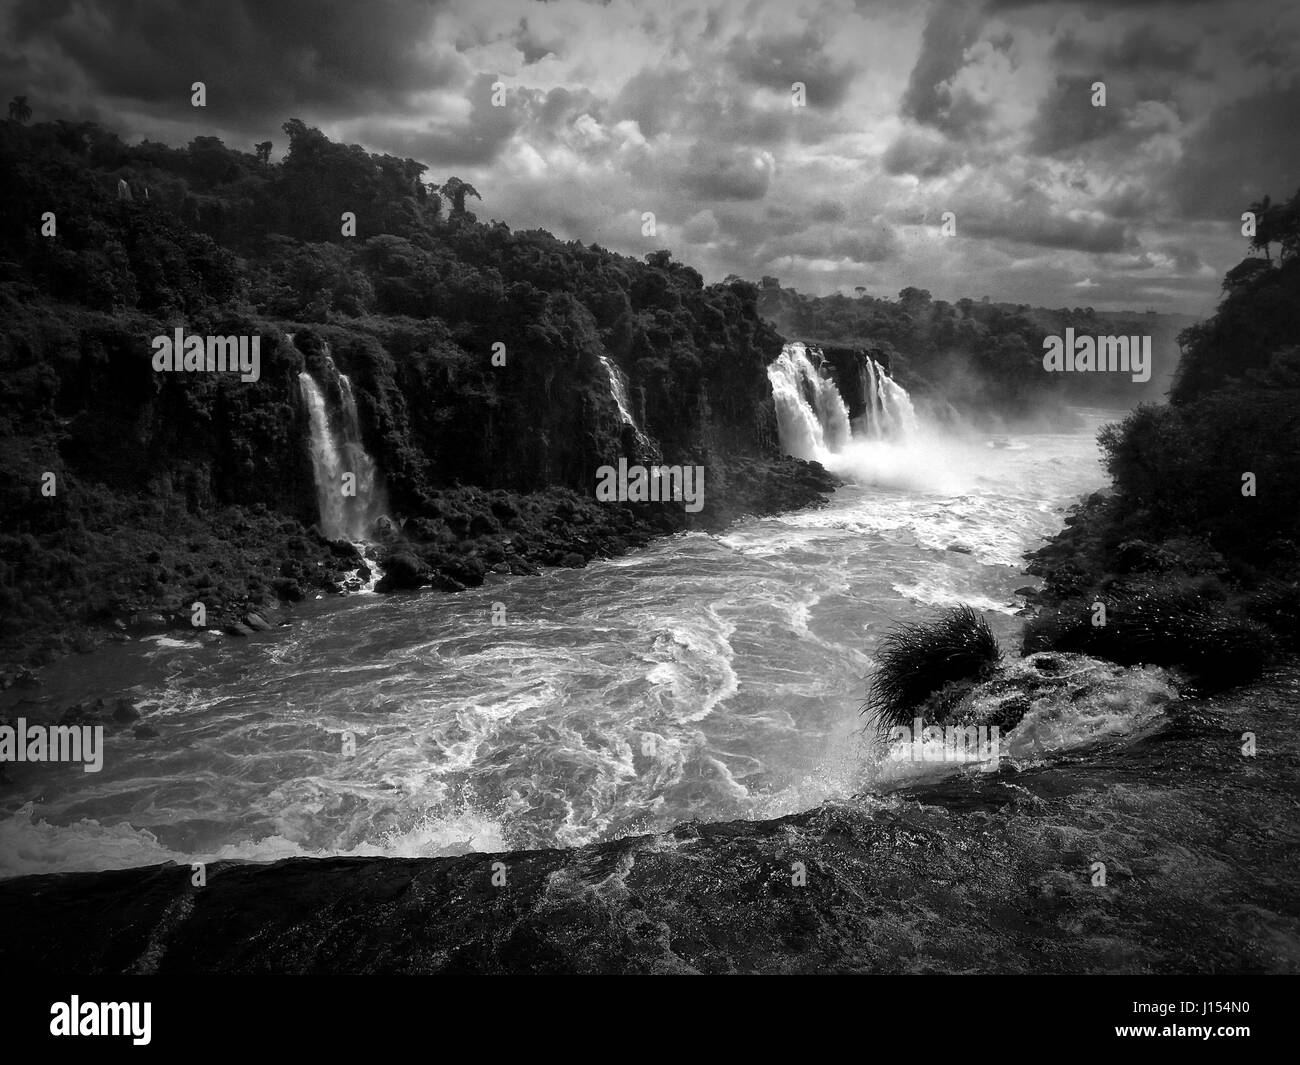 Devi la gorge d'Iguazu, Argentine, Brésil Banque D'Images